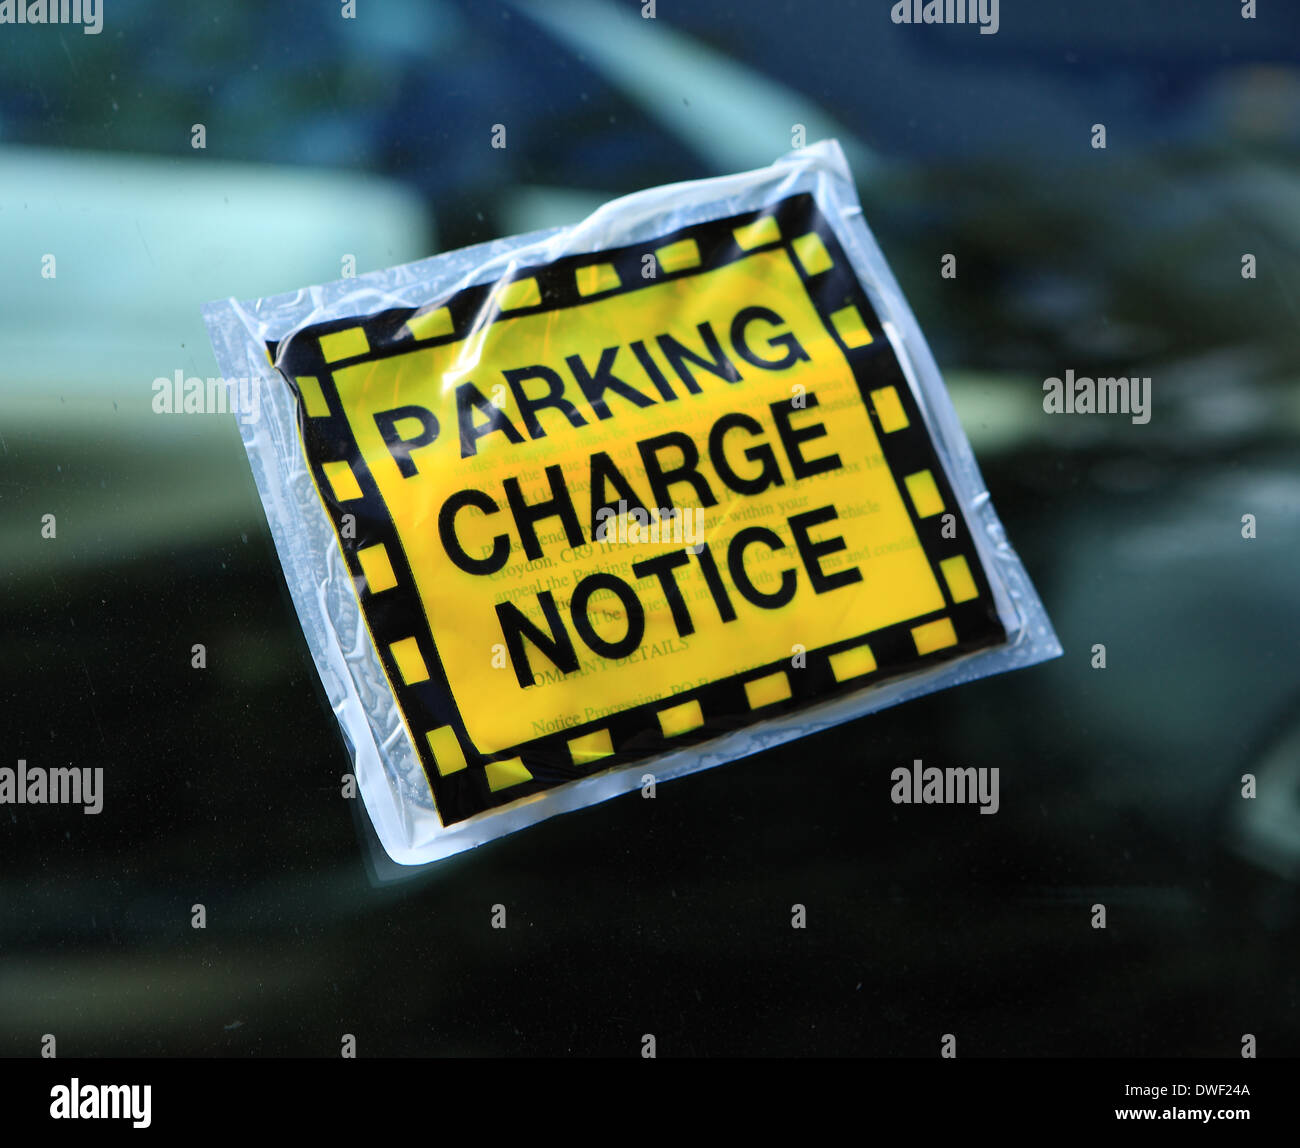 Avis sur les droits de stationnement sur la fenêtre d'une voiture Banque D'Images